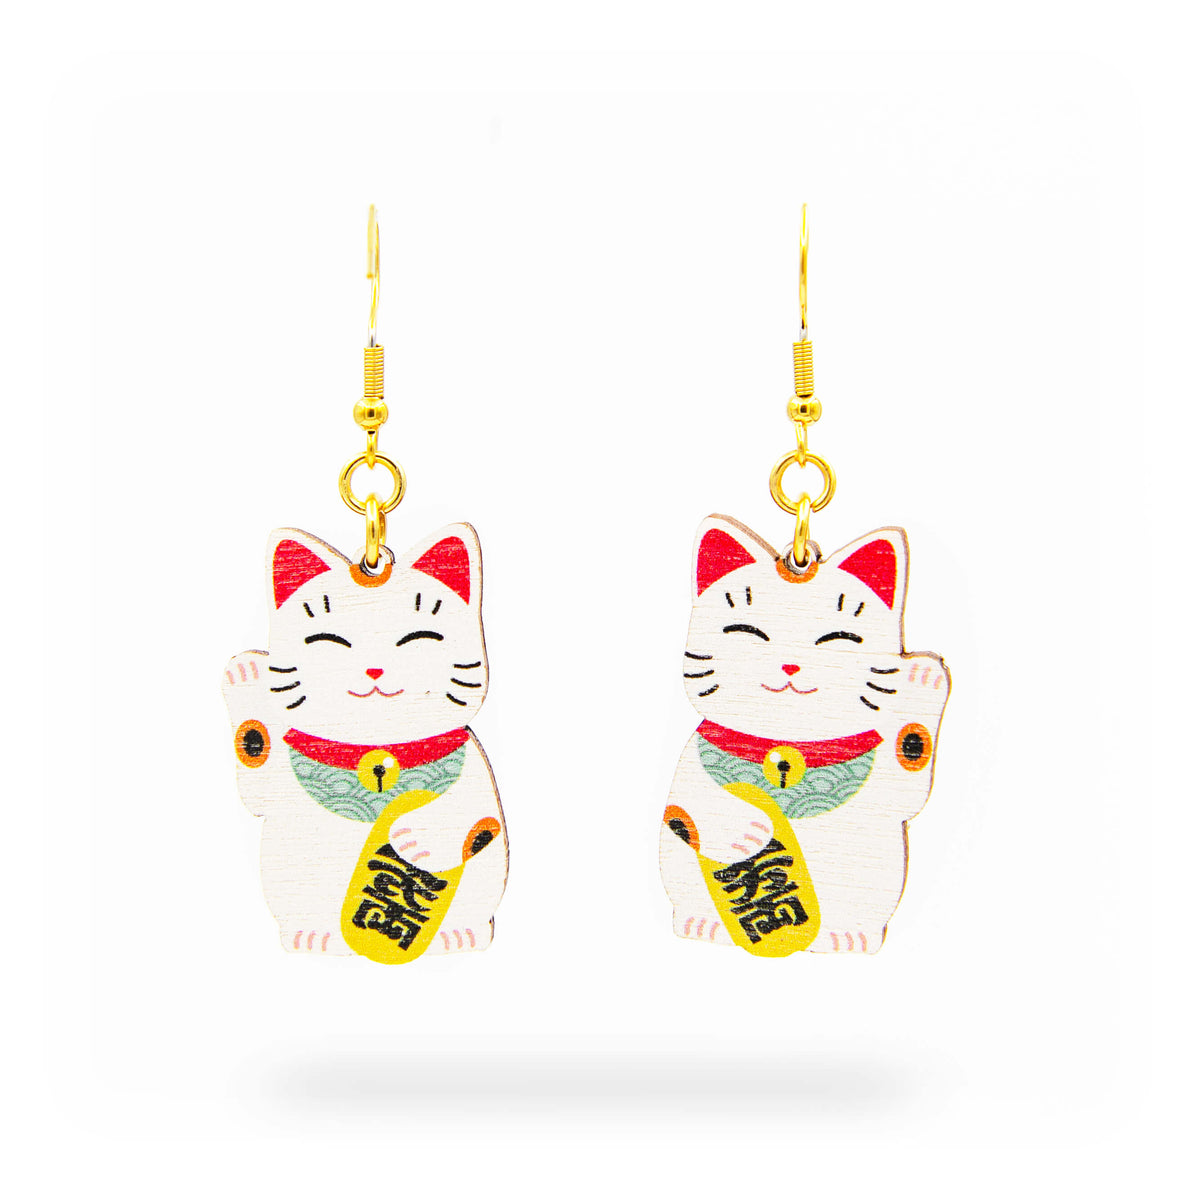 Onnea tuovat Onnenkissa 'Maneki Neko' nappikorvakorut. Maneki neko 招き猫, eli onnenkissa on hyvin perinteinen näkymä japanilaisessa symboliikassa. Sen on ajateltu tuovan onnea omistajalleen. Onnenkissat ovat täydelliset sinulle, mikäli pidät japanilaisesta symboliikasta. Nämä uniikit Onnenkissa nappikorvakorut sopivat erinomaisesti arkikäyttöön! Tässä on myös jollekin Japanin kulttuurin ihailijalle erityinen lahjaidea! Rakkkaudella käsintehty Suomessa.